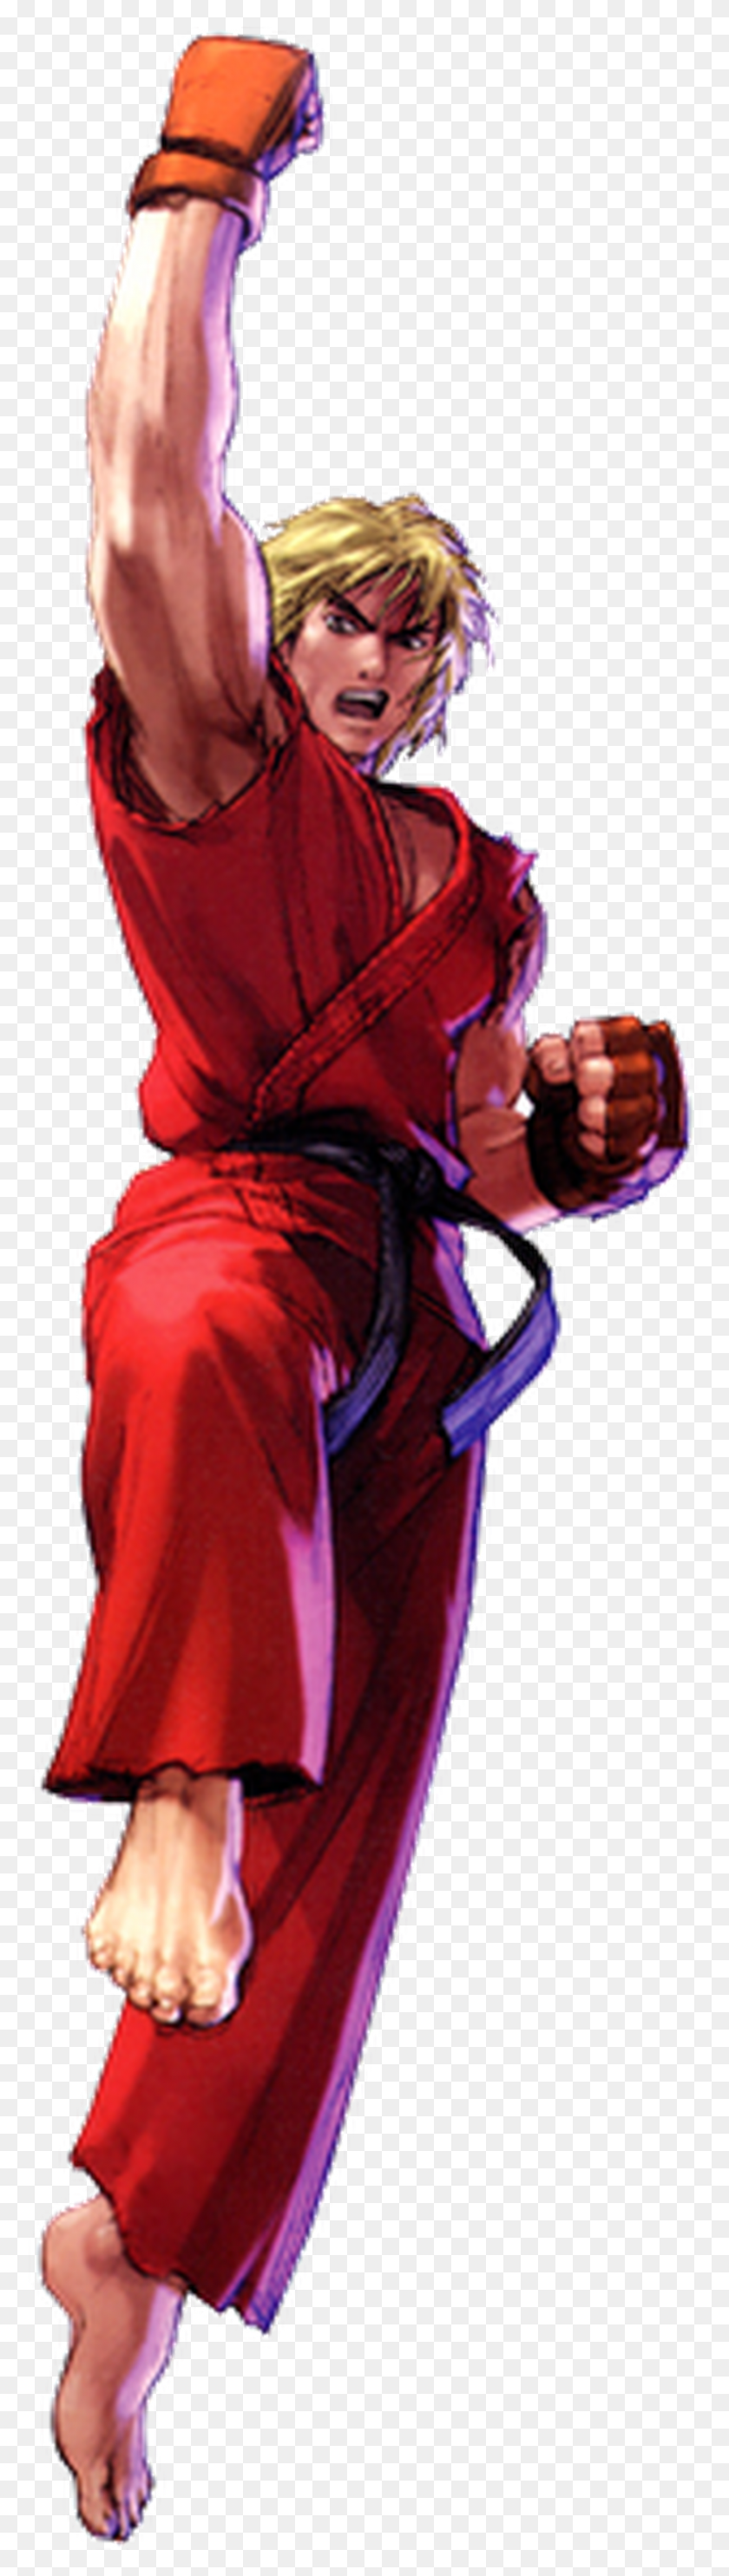 859x3205 Descargar Png Ken Masters Street Fighter Wiki Fandom Desarrollado Por Wikia Ken Street Fighter Uppercut, Ropa, Persona Hd Png